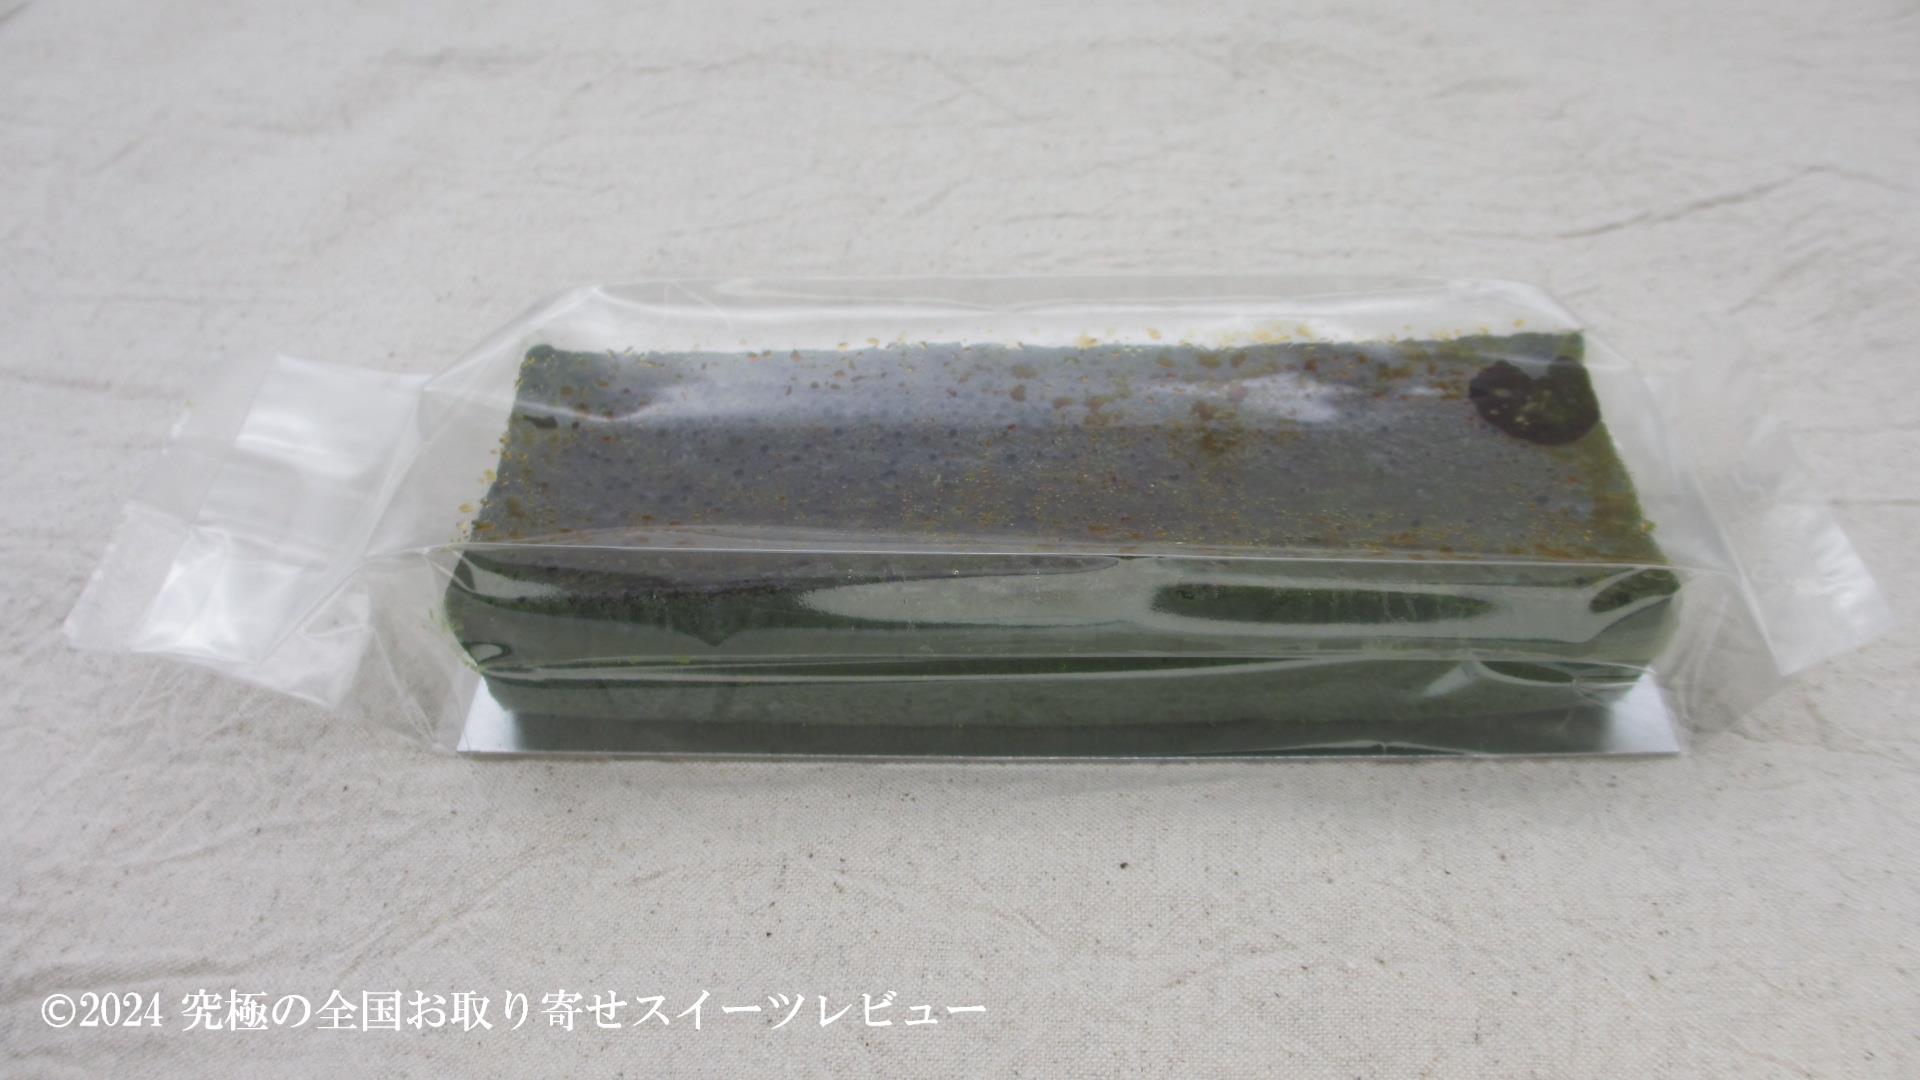 抹茶テリーヌプレミアム(祇園辻利)の化粧箱から取り出した状態の画像